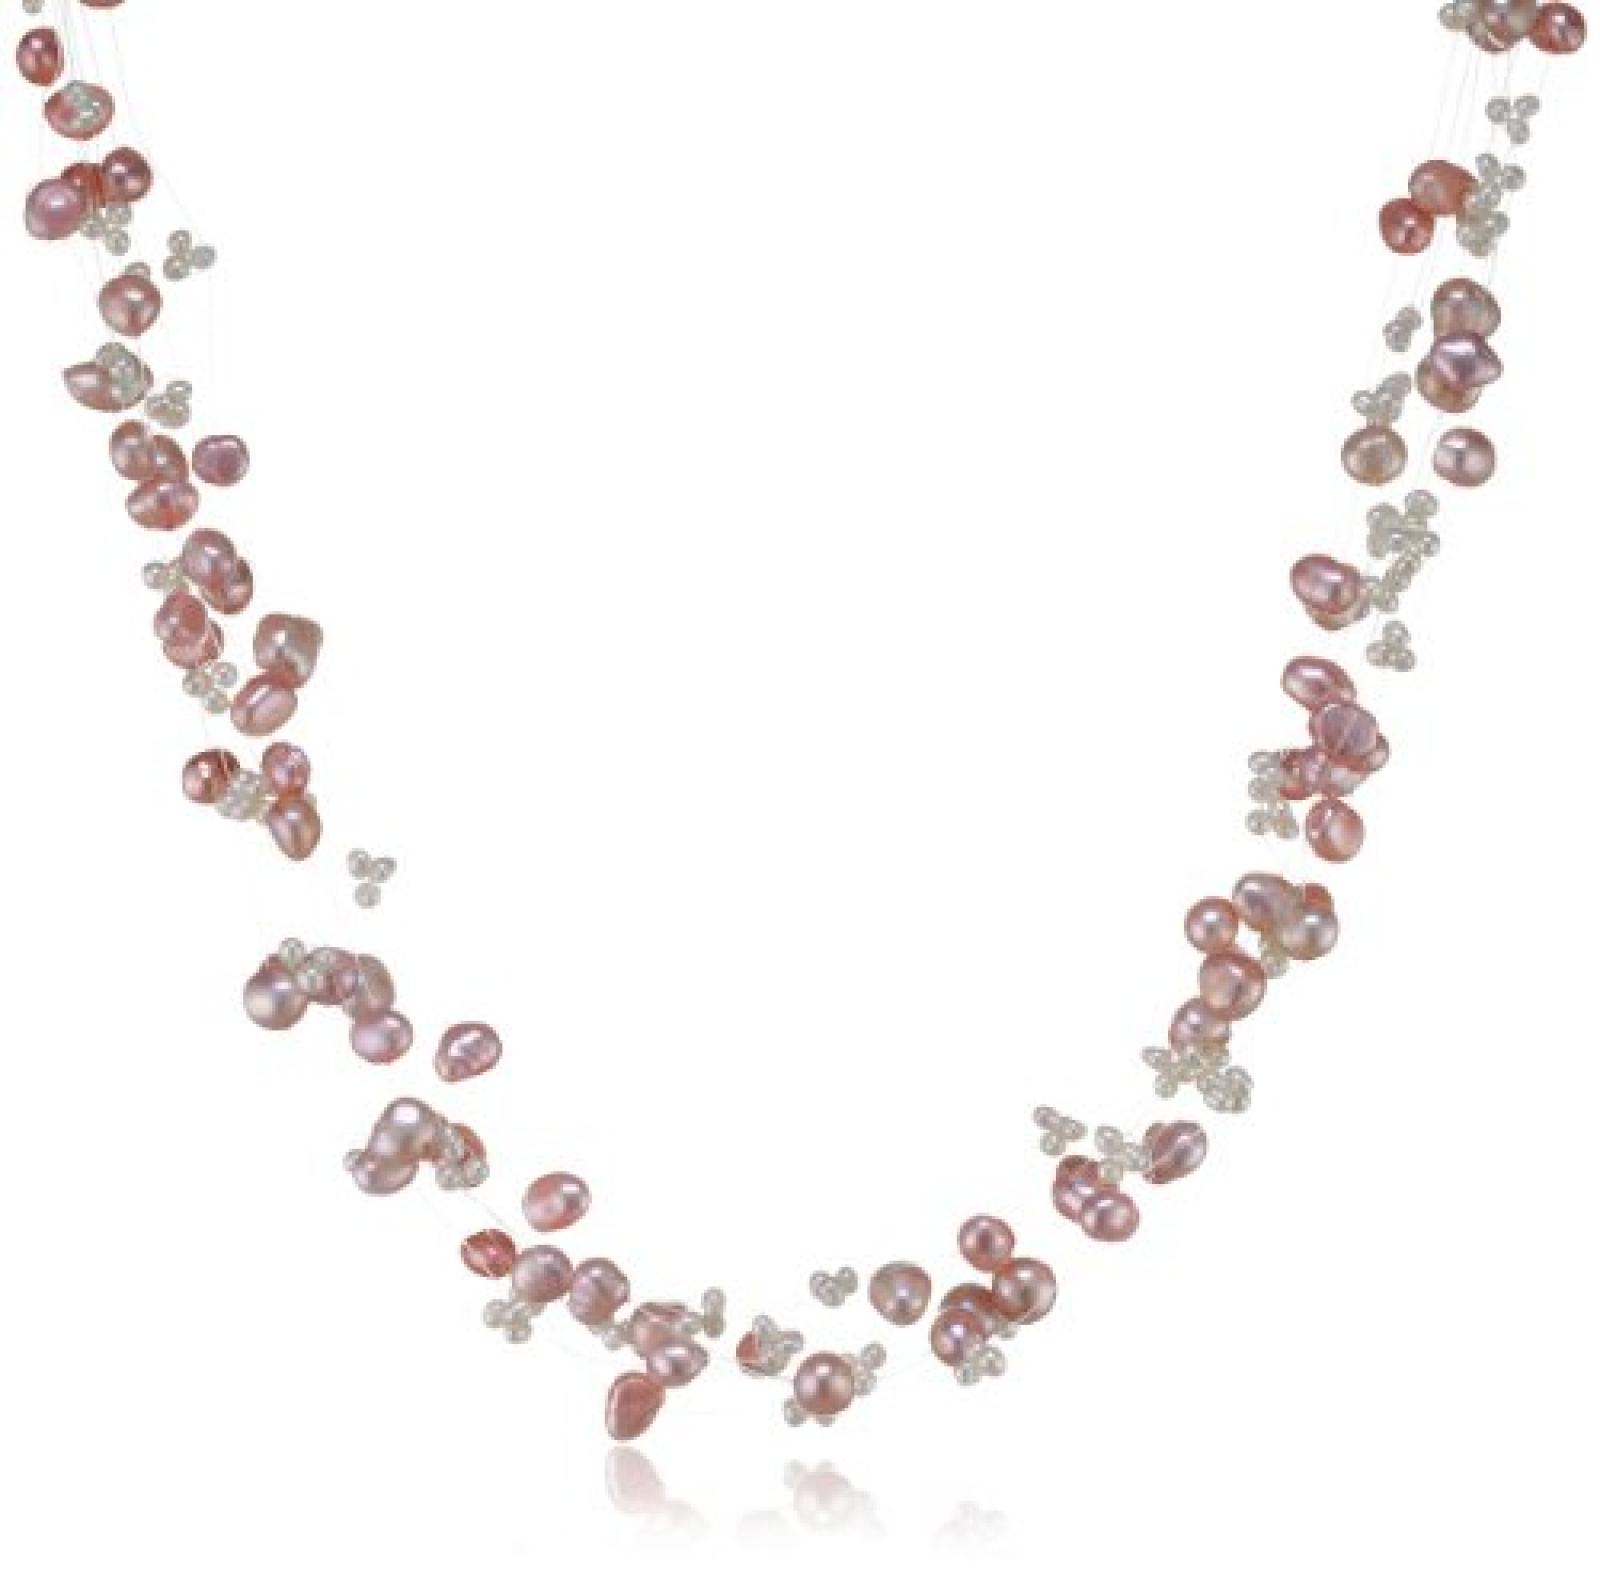 Valero Pearls Fashion Collection Damen-Kette Hochwertige Süßwasser-Zuchtperlen in ca.  4-6 mm Barock rosa/weiß  43 cm + 5 cm Verlängerung   60200102 